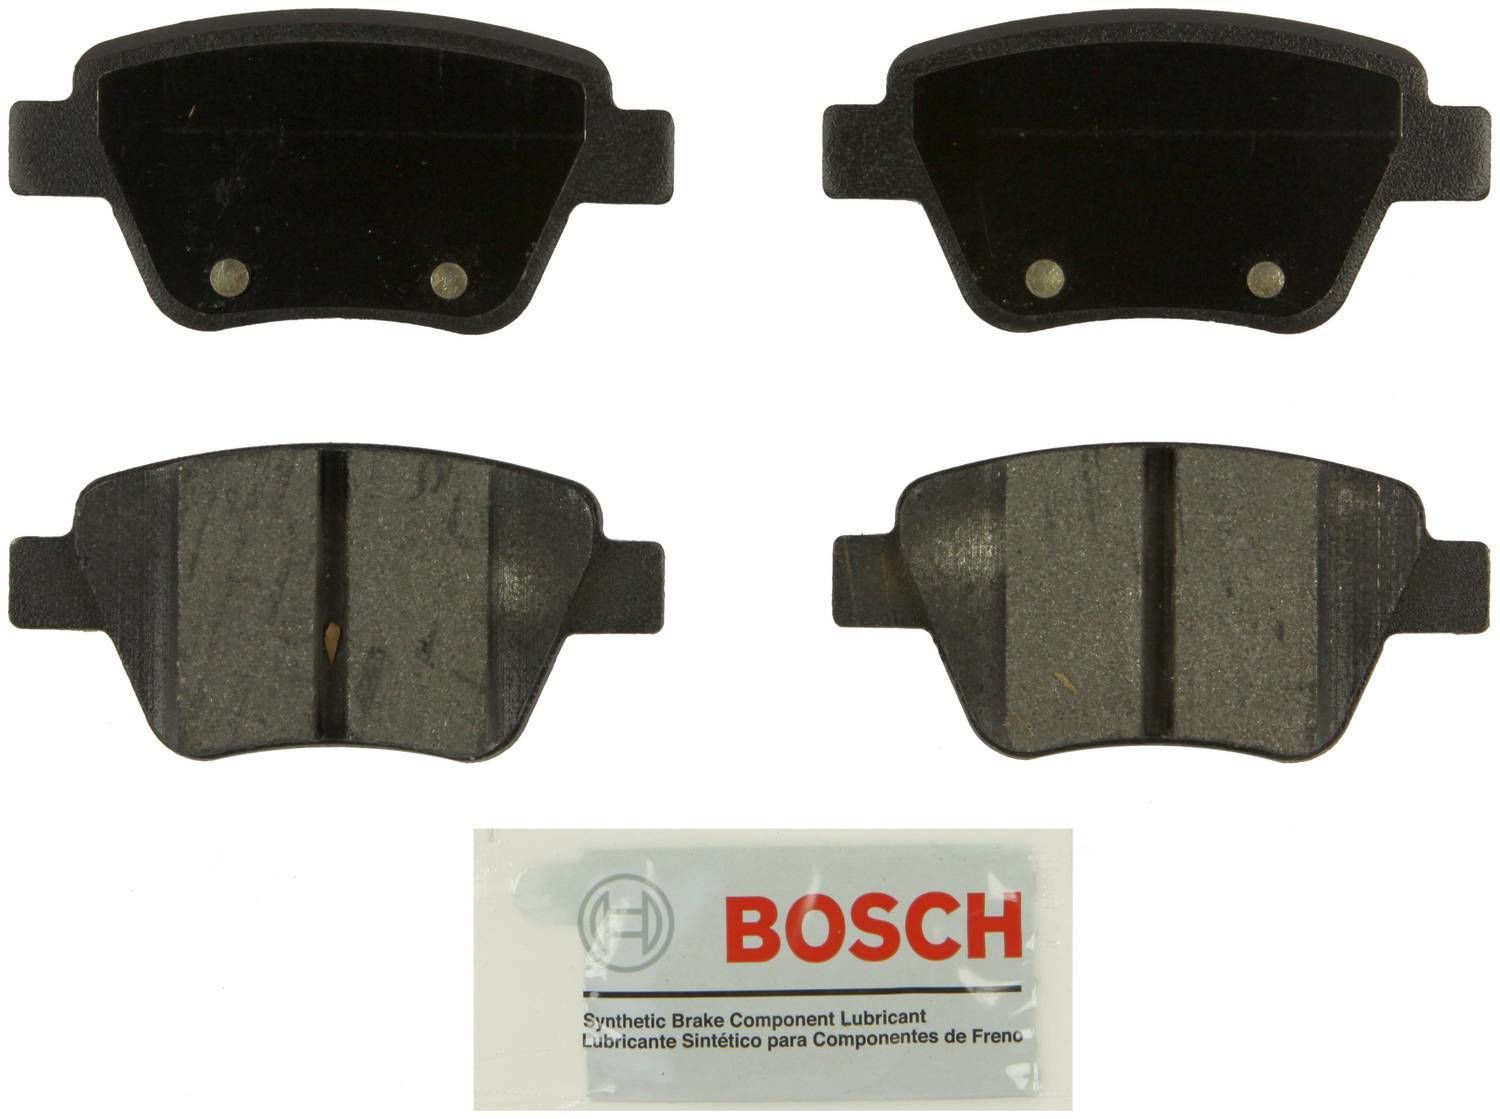 BOSCH BRAKE - Bosch Blue Semi-Metallic Brake Pads (Rear) - BQC BE1456